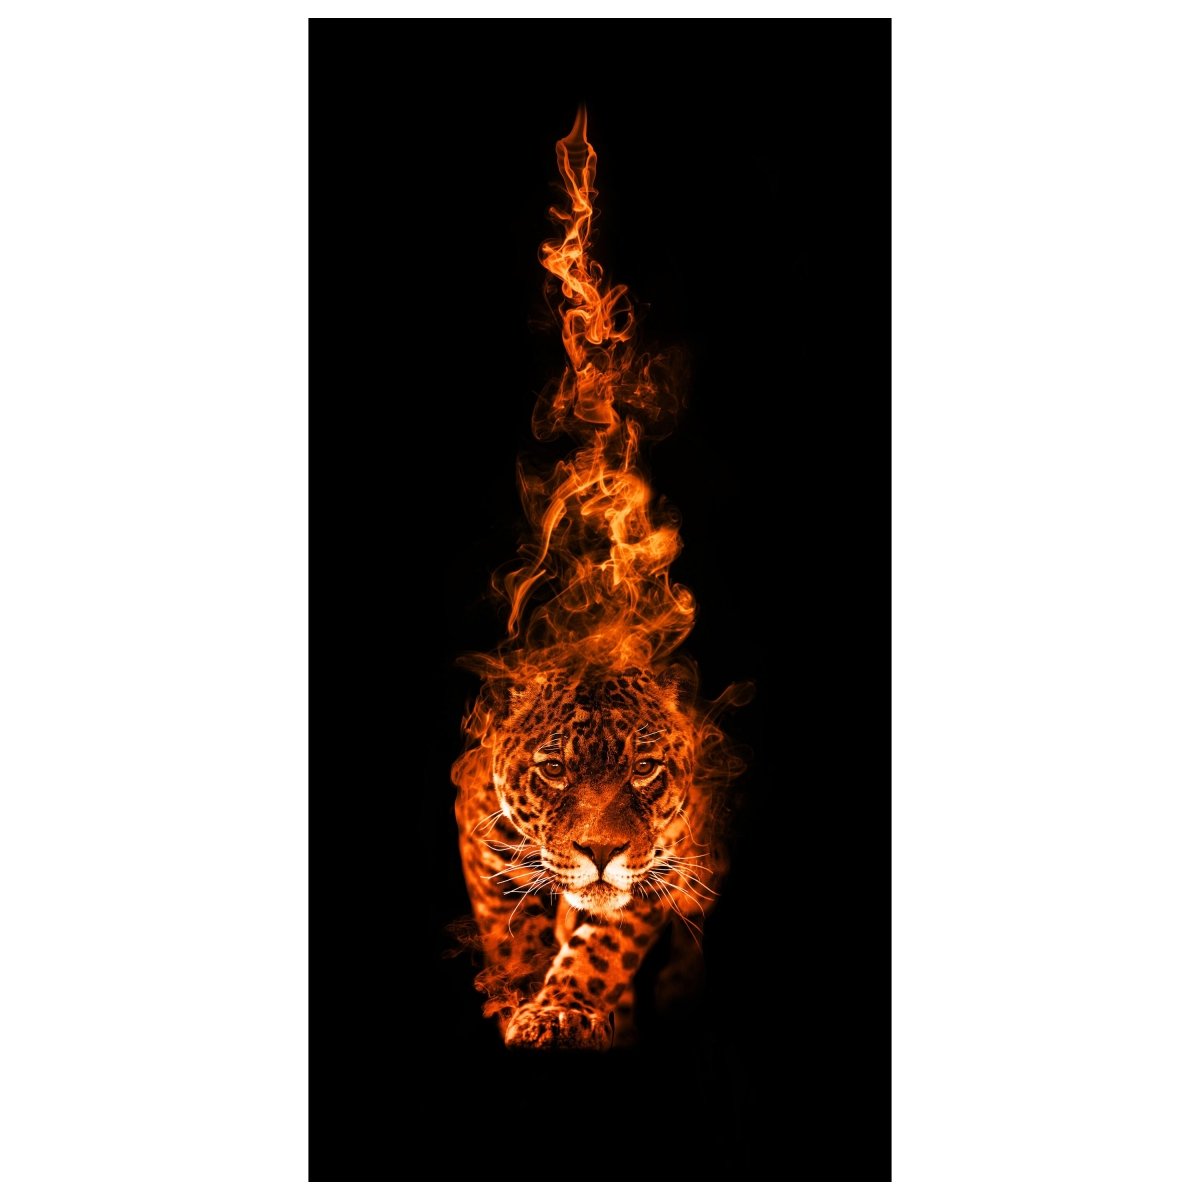 Türtapete Leopard in Flammen, Tier, Fantasy, Feuer M1342 - Bild 2